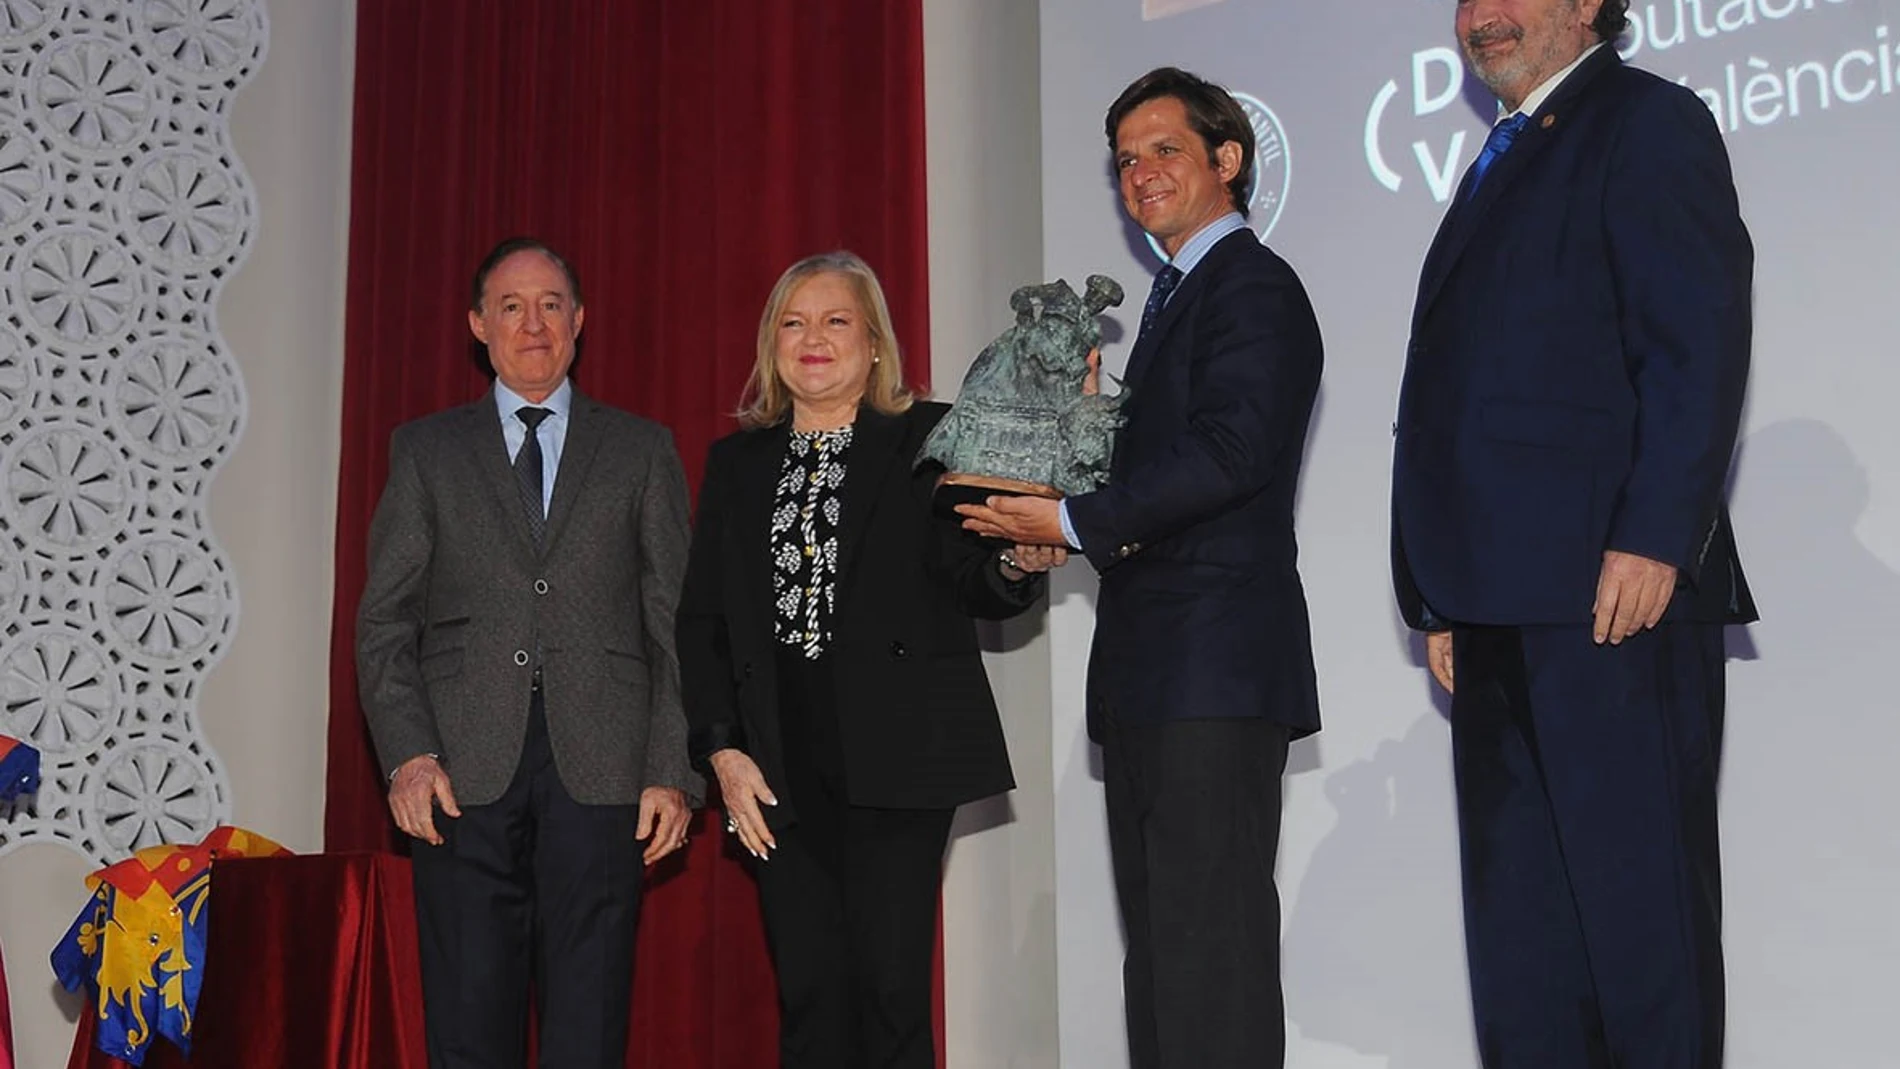 El Ateneo Mercantil de Valencia entrega su premio "Distinción" a El Juli